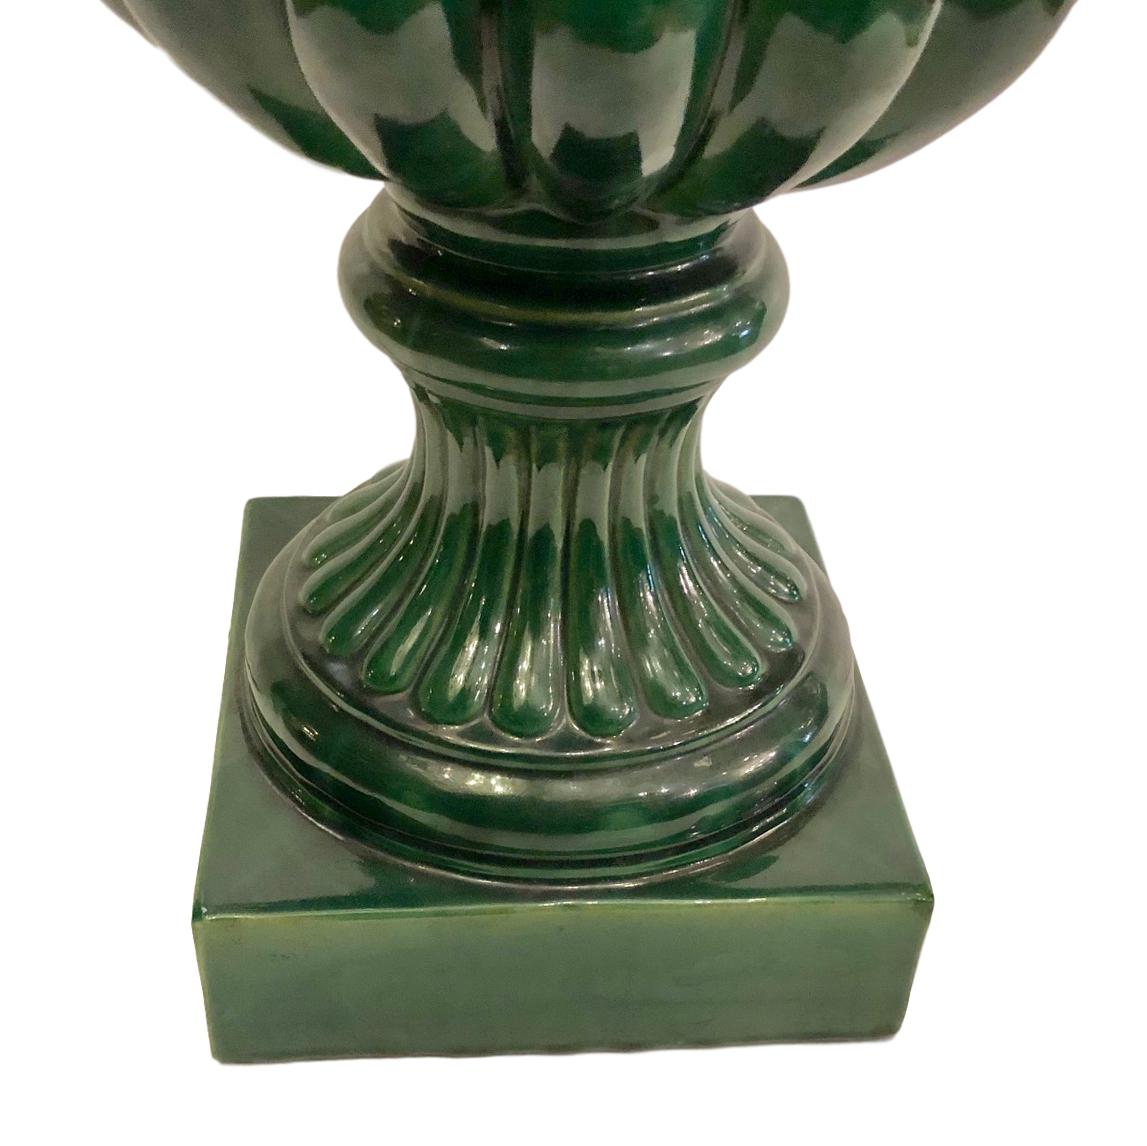 Große Tischlampe aus grünem italienischem Porzellan in Form eines Tannenzapfens, ca. 1930er Jahre.

Abmessungen:
Höhe des Körpers: 26